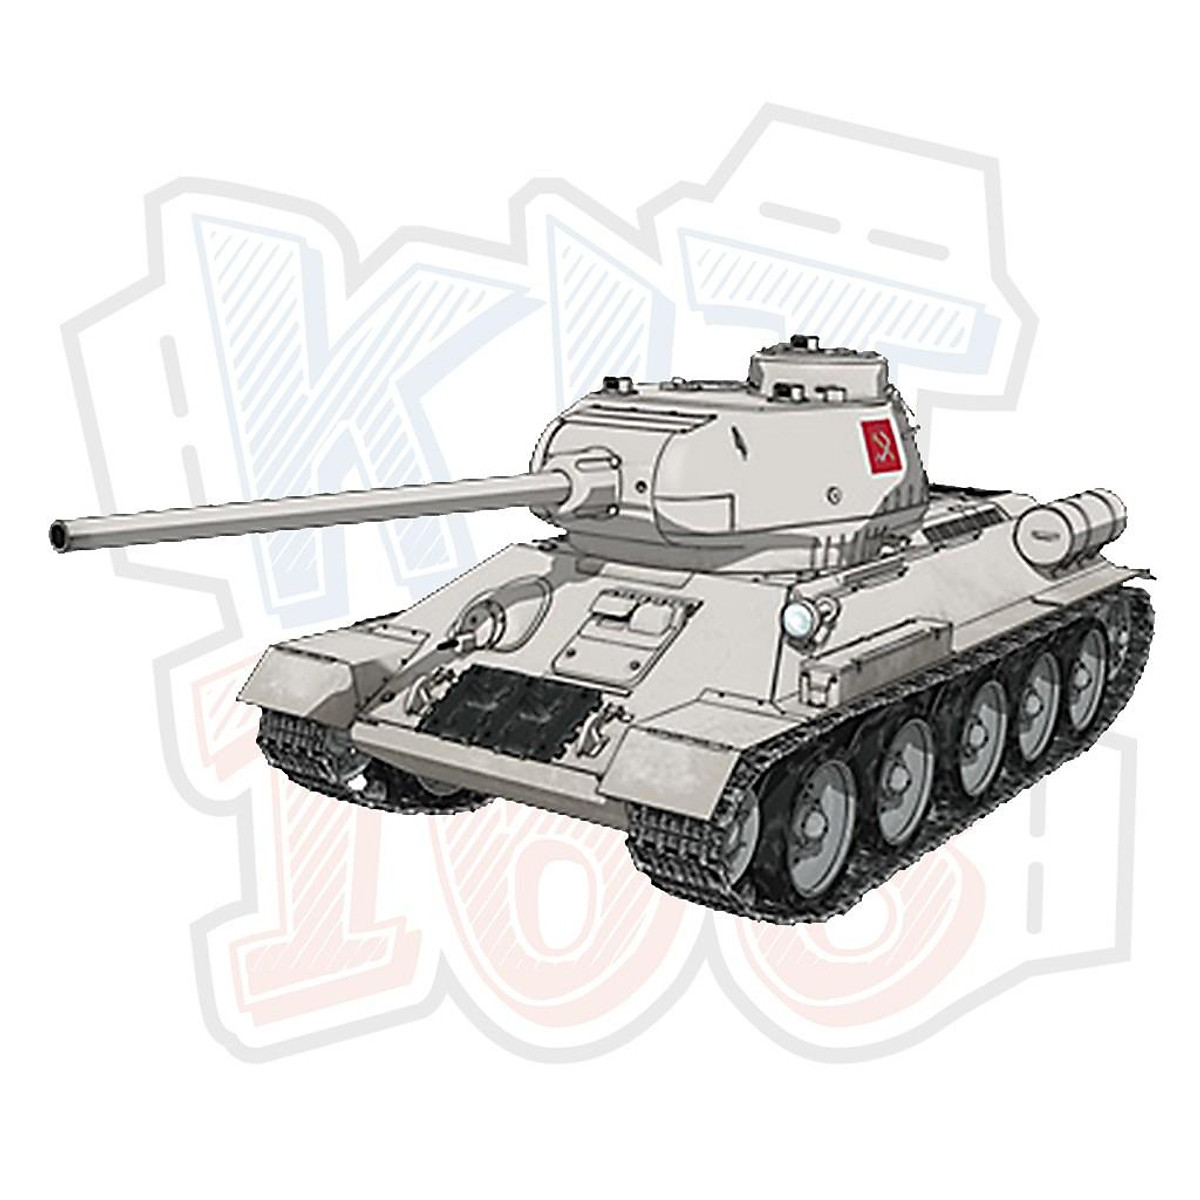 Mô hình giấy xe tank Tiger I tỉ lệ 135  Giá Tiki khuyến mãi 33000đ   Mua ngay  Tư vấn mua sắm  tiêu dùng trực tuyến Bigomart